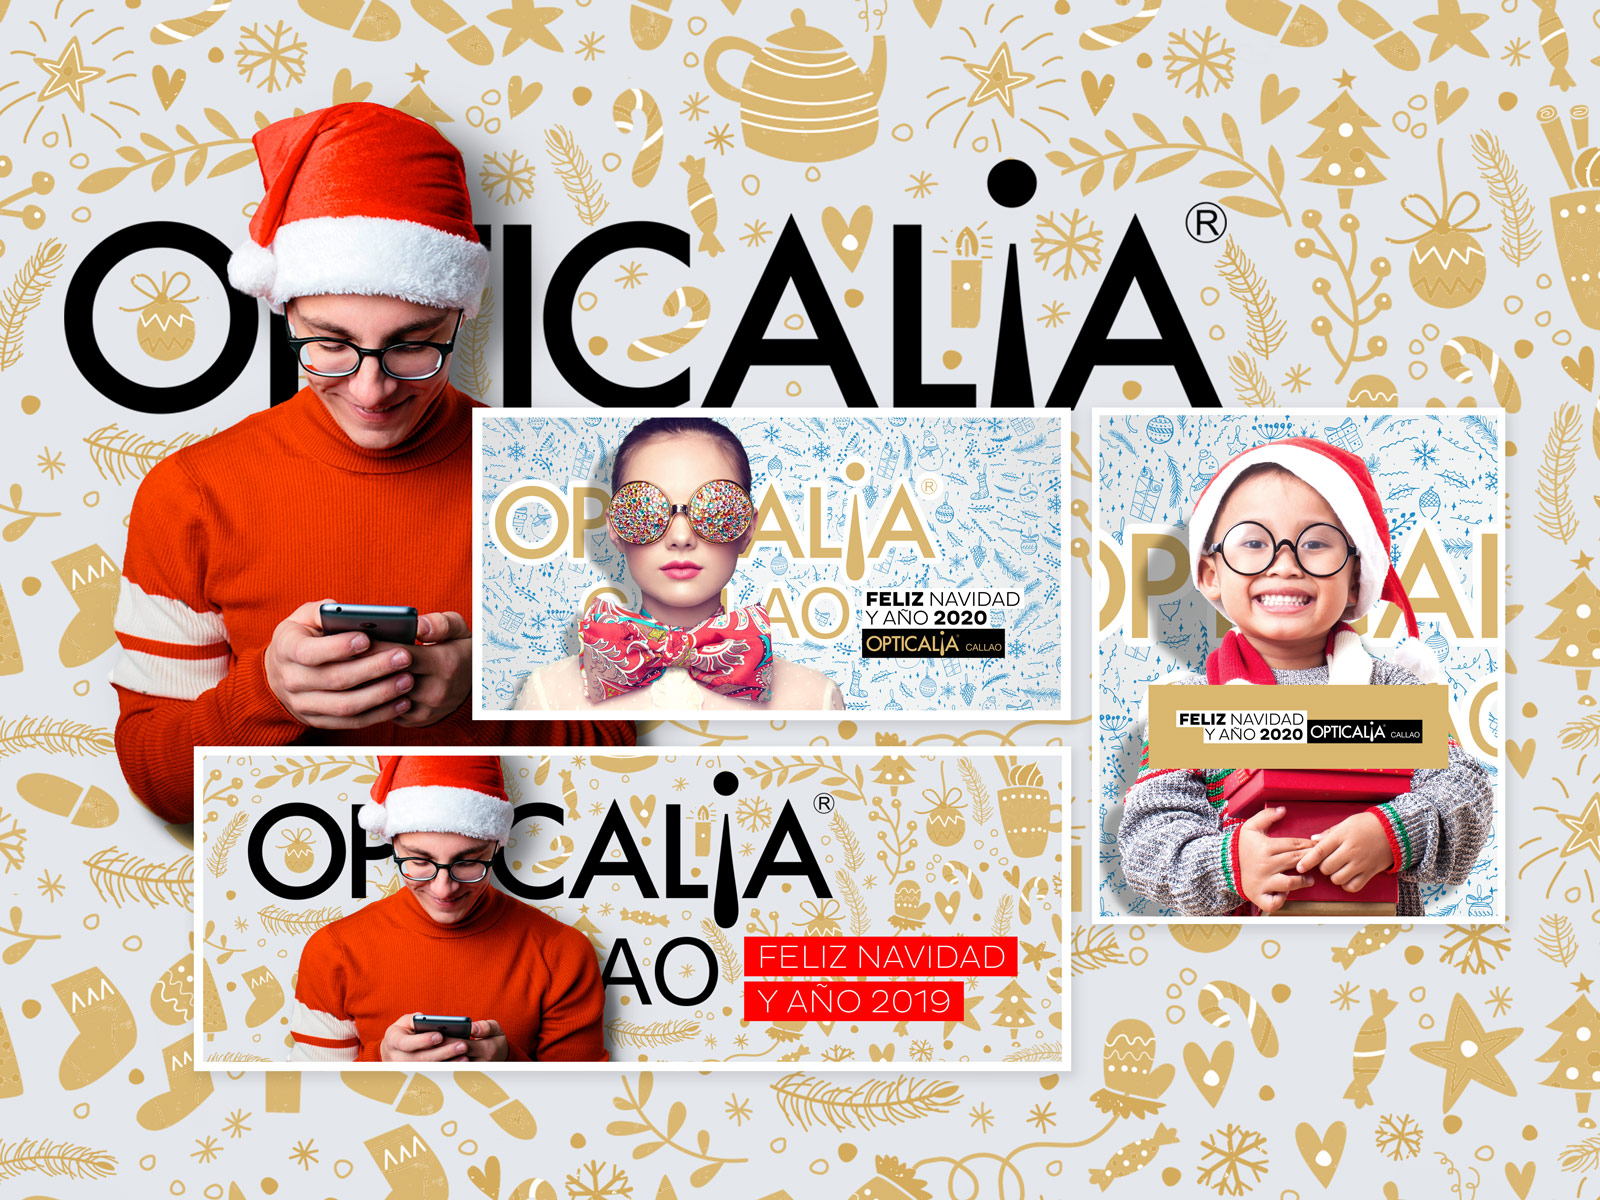 Opticalia Callao